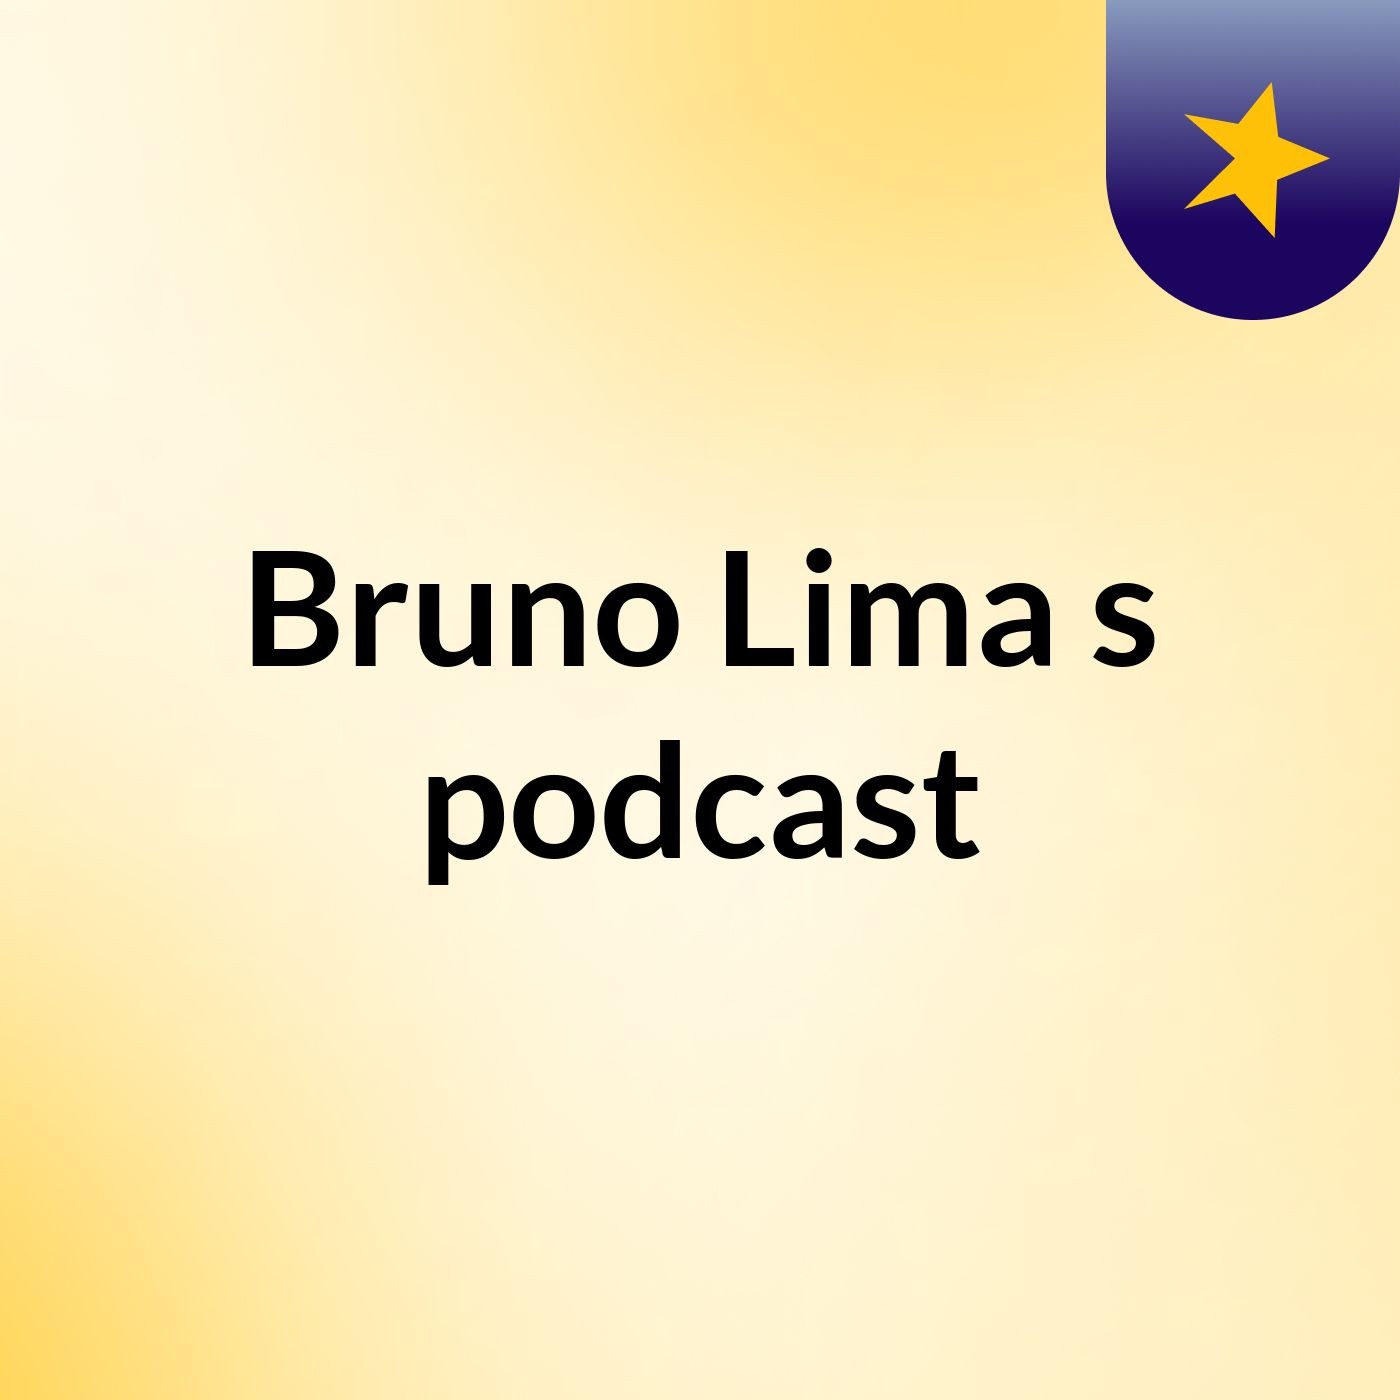 Bruno Lima's podcast